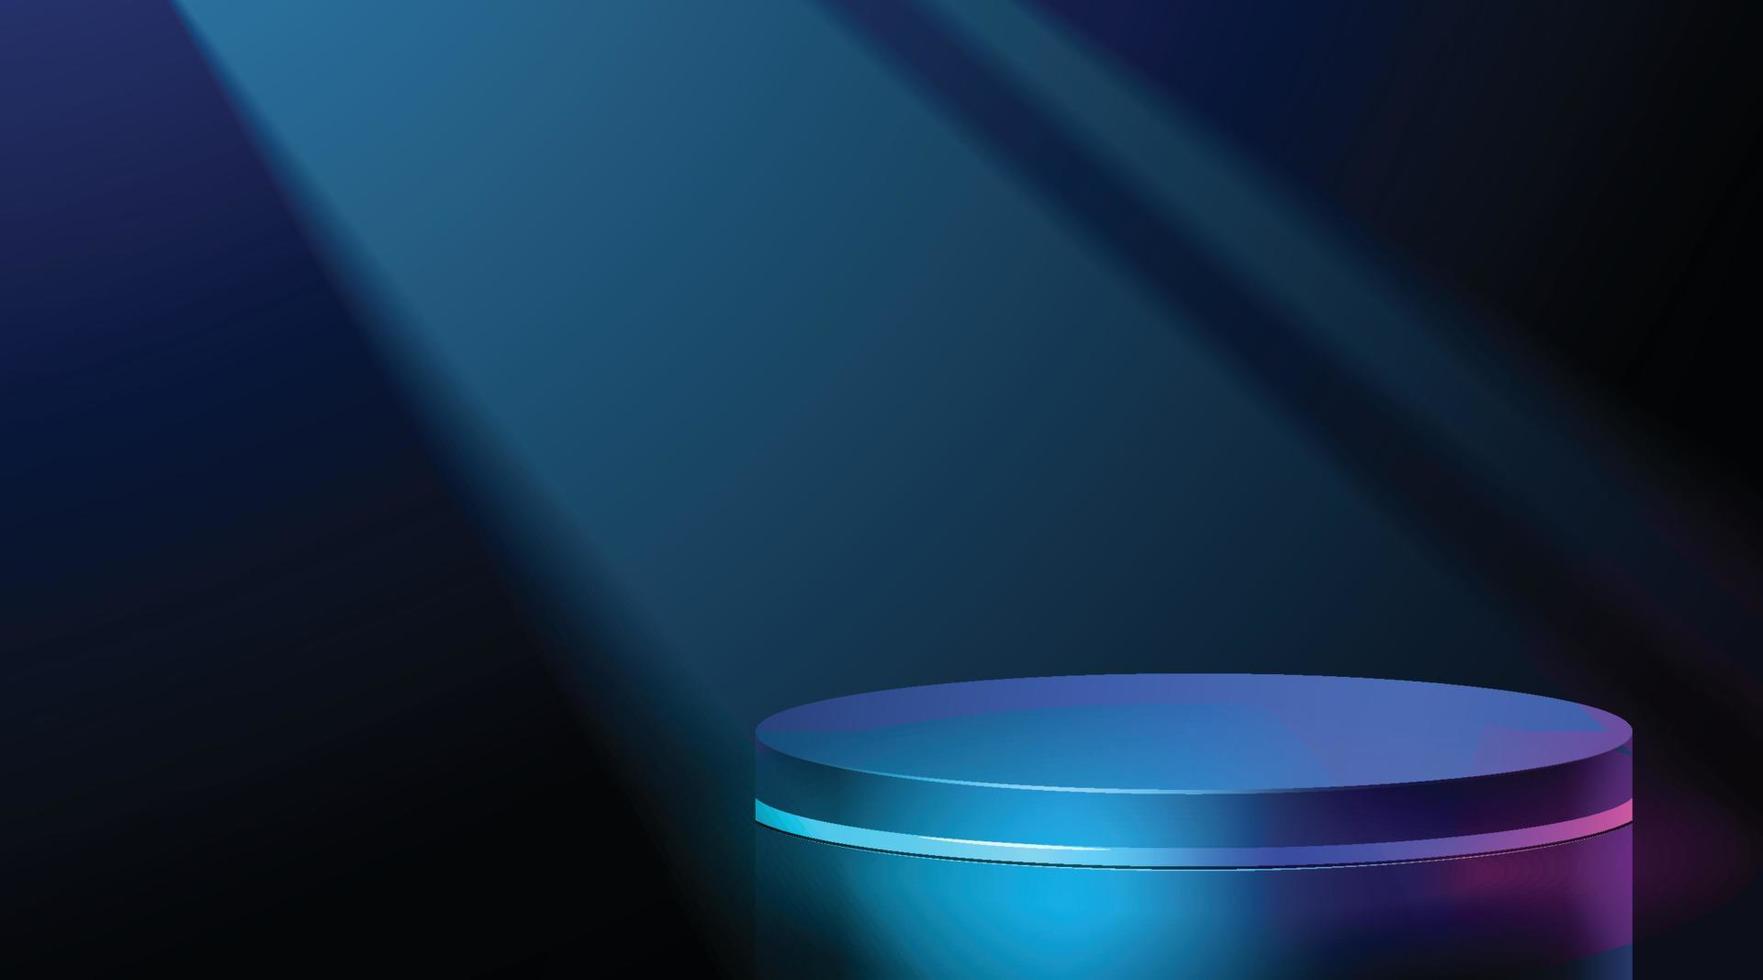 cyber scène futuriste avec podium néon bleu 3d brillant pour la présentation du produit dans l'obscurité vecteur